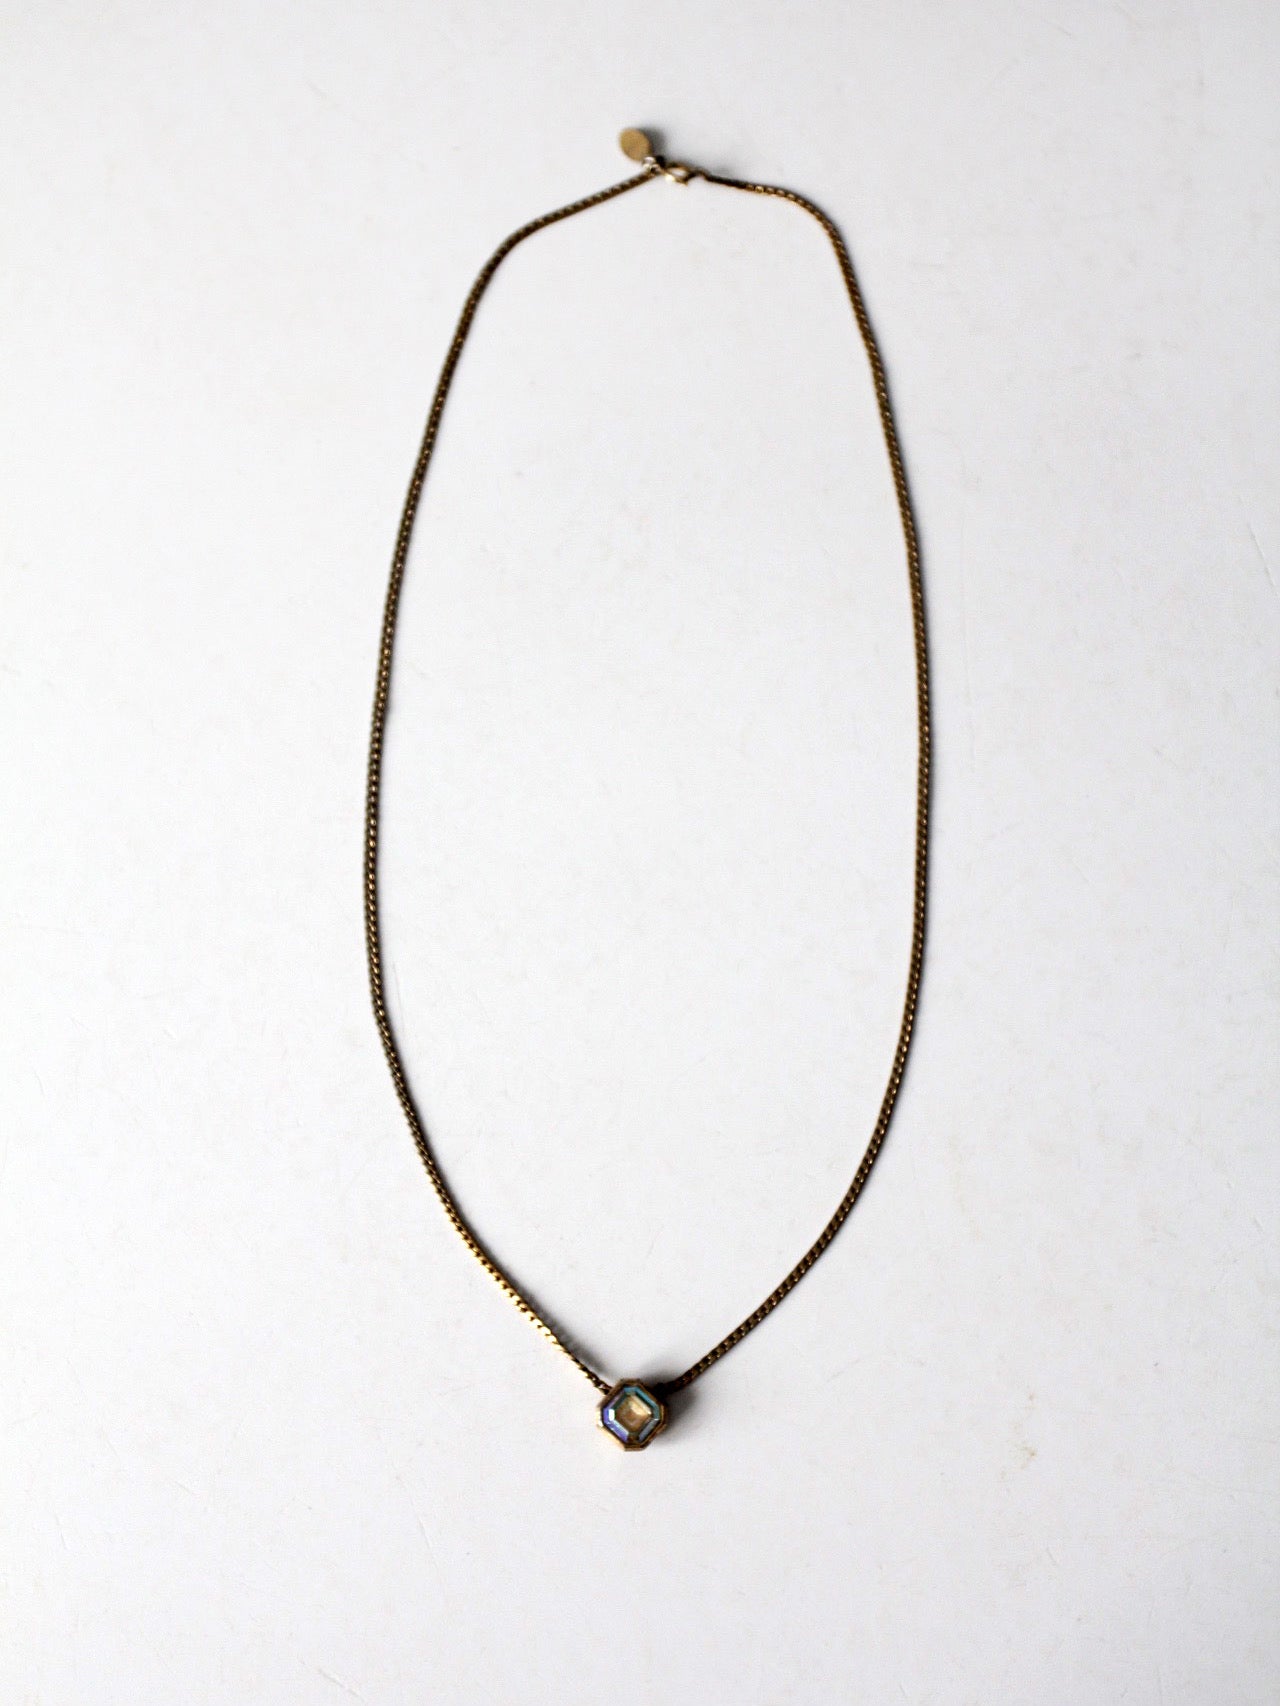 vintage Avon pendant necklace